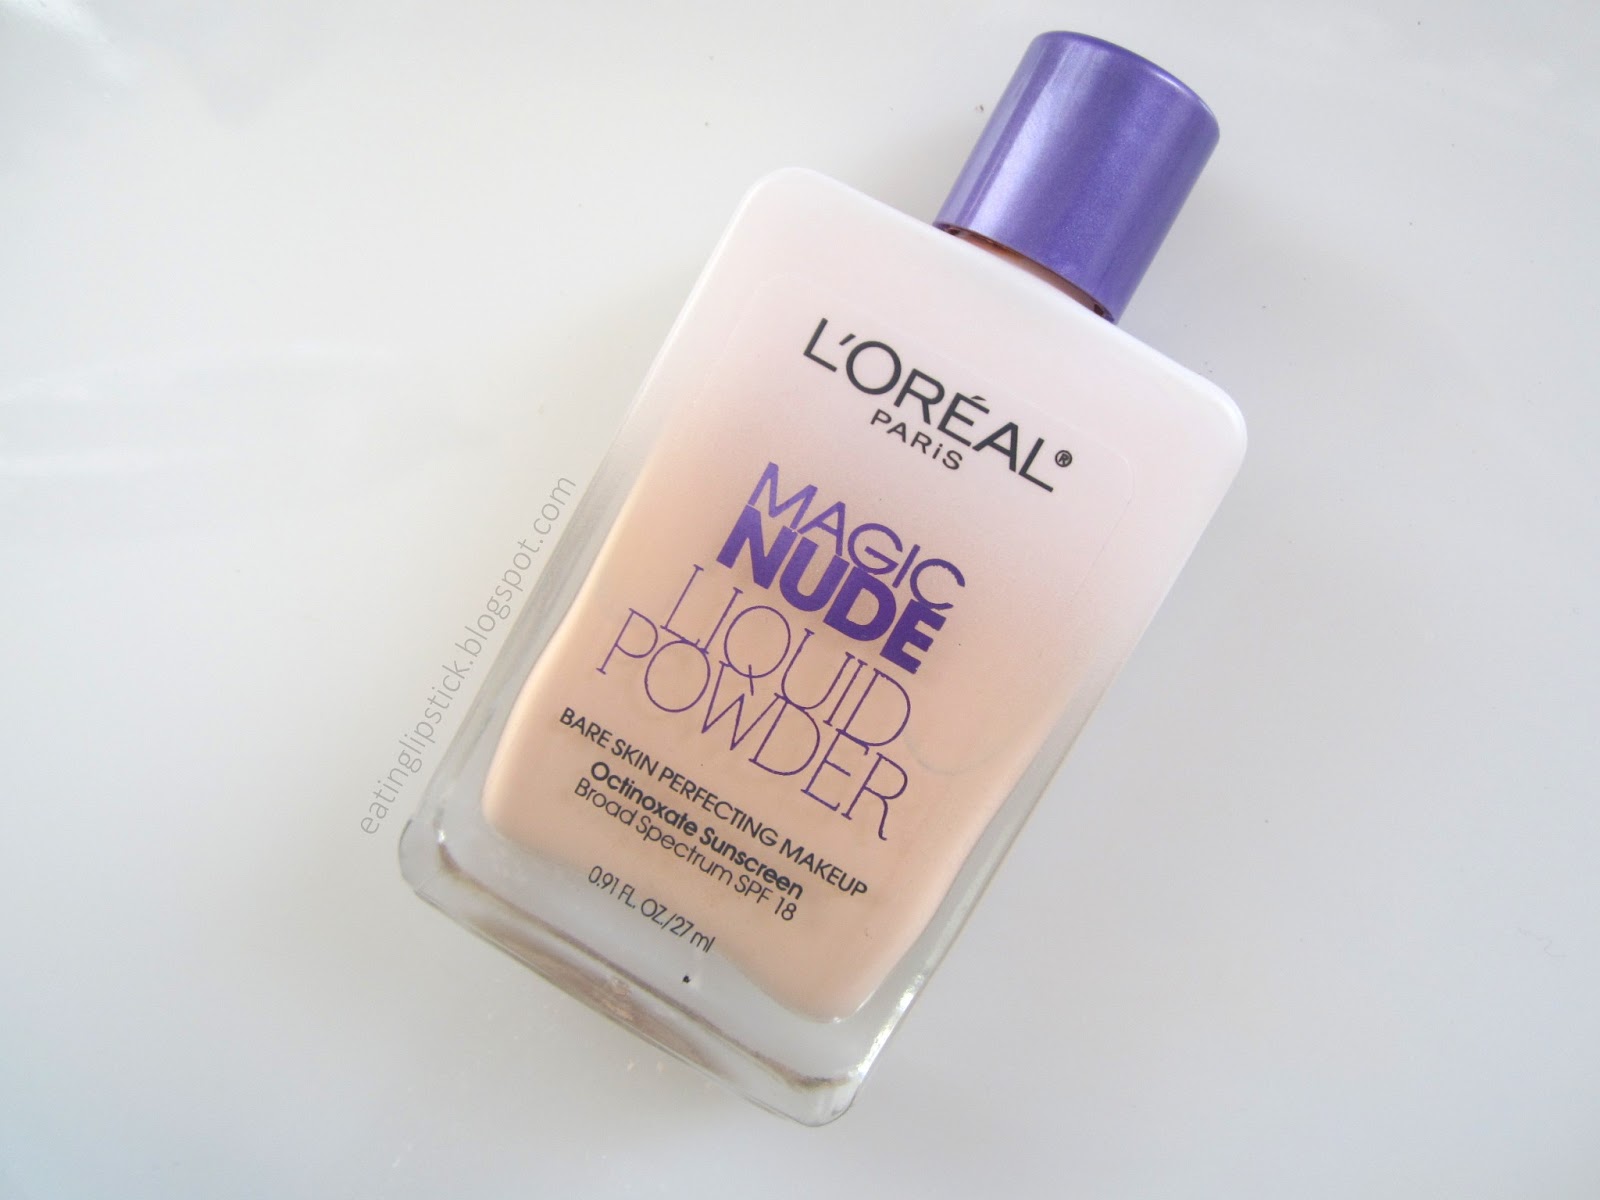 LOreal Paris Magic Nude Liquid Powder Review & Swatches 